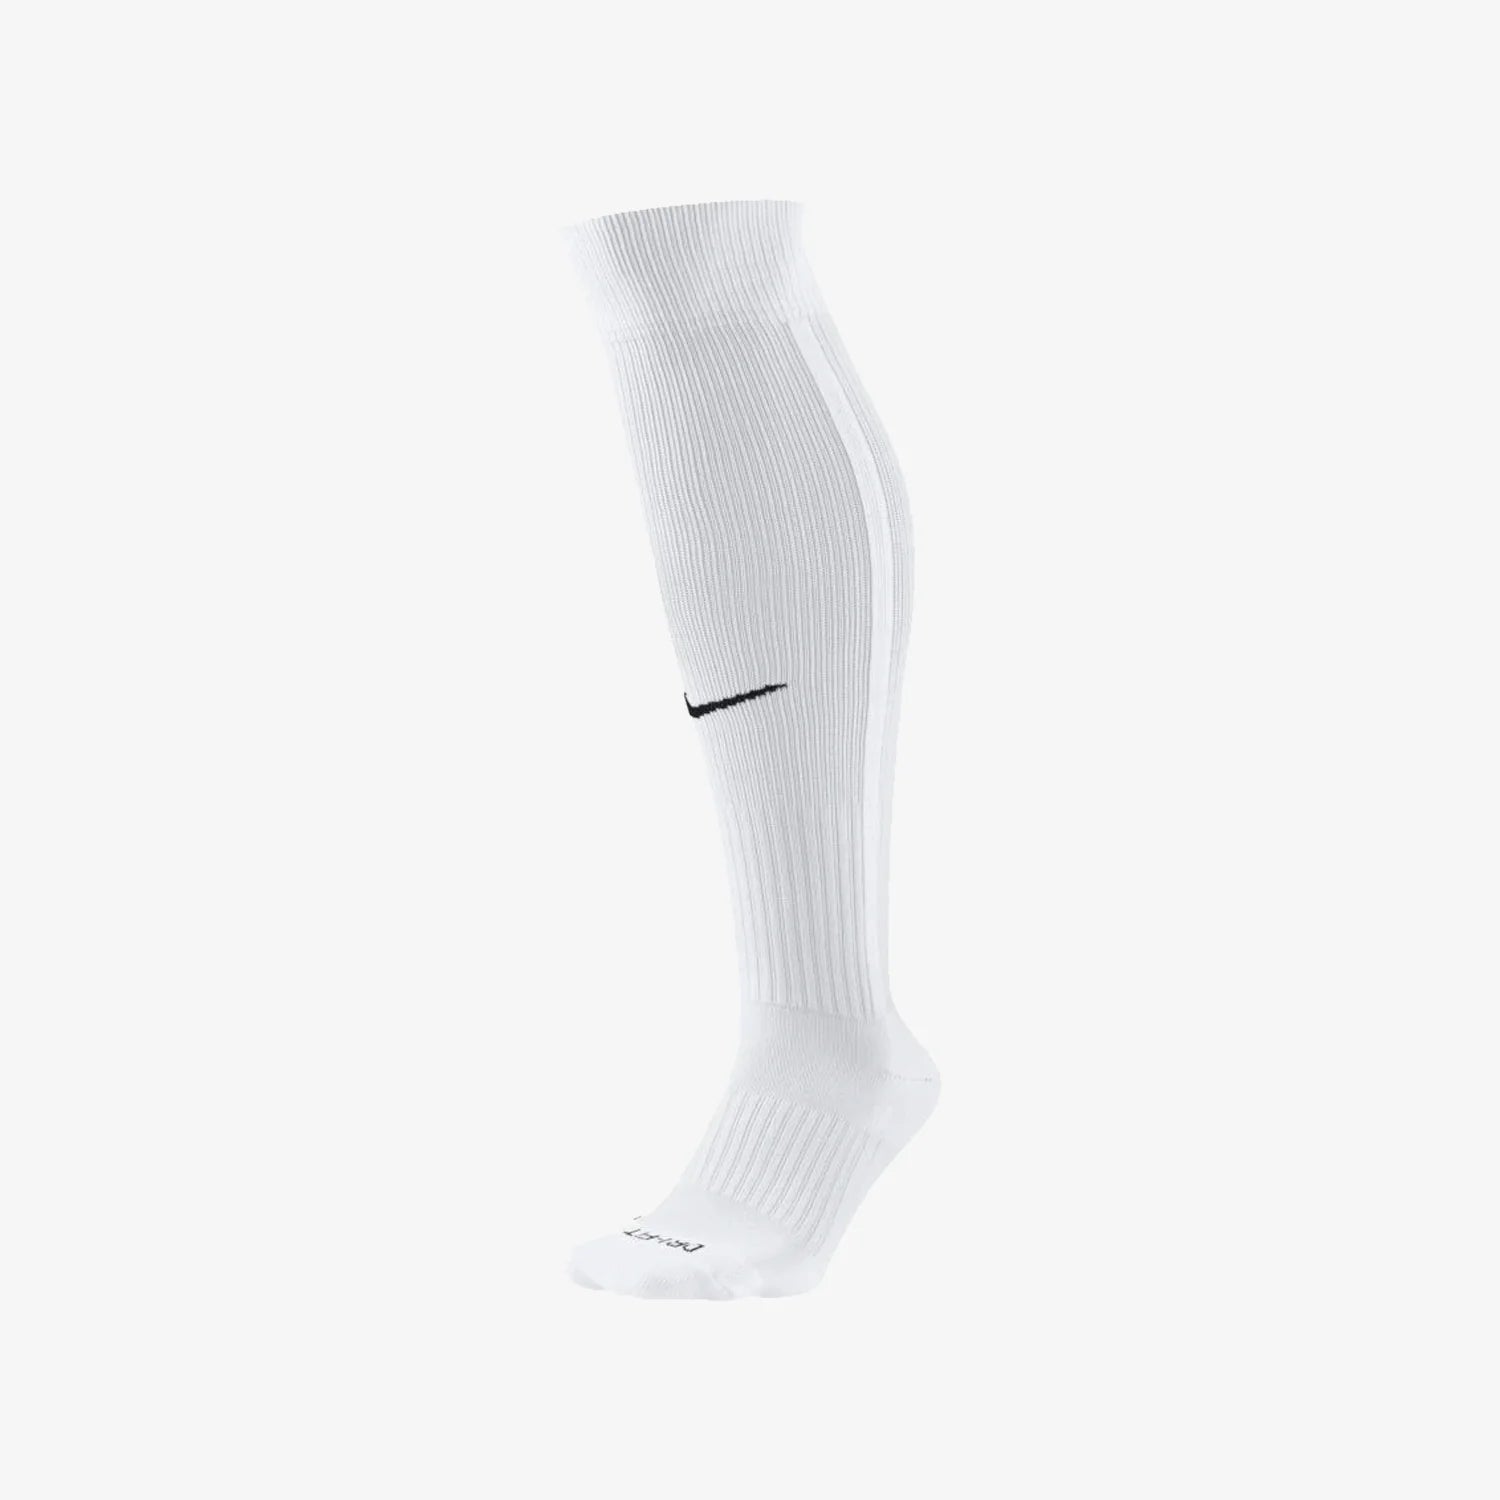 Nike Vapor III